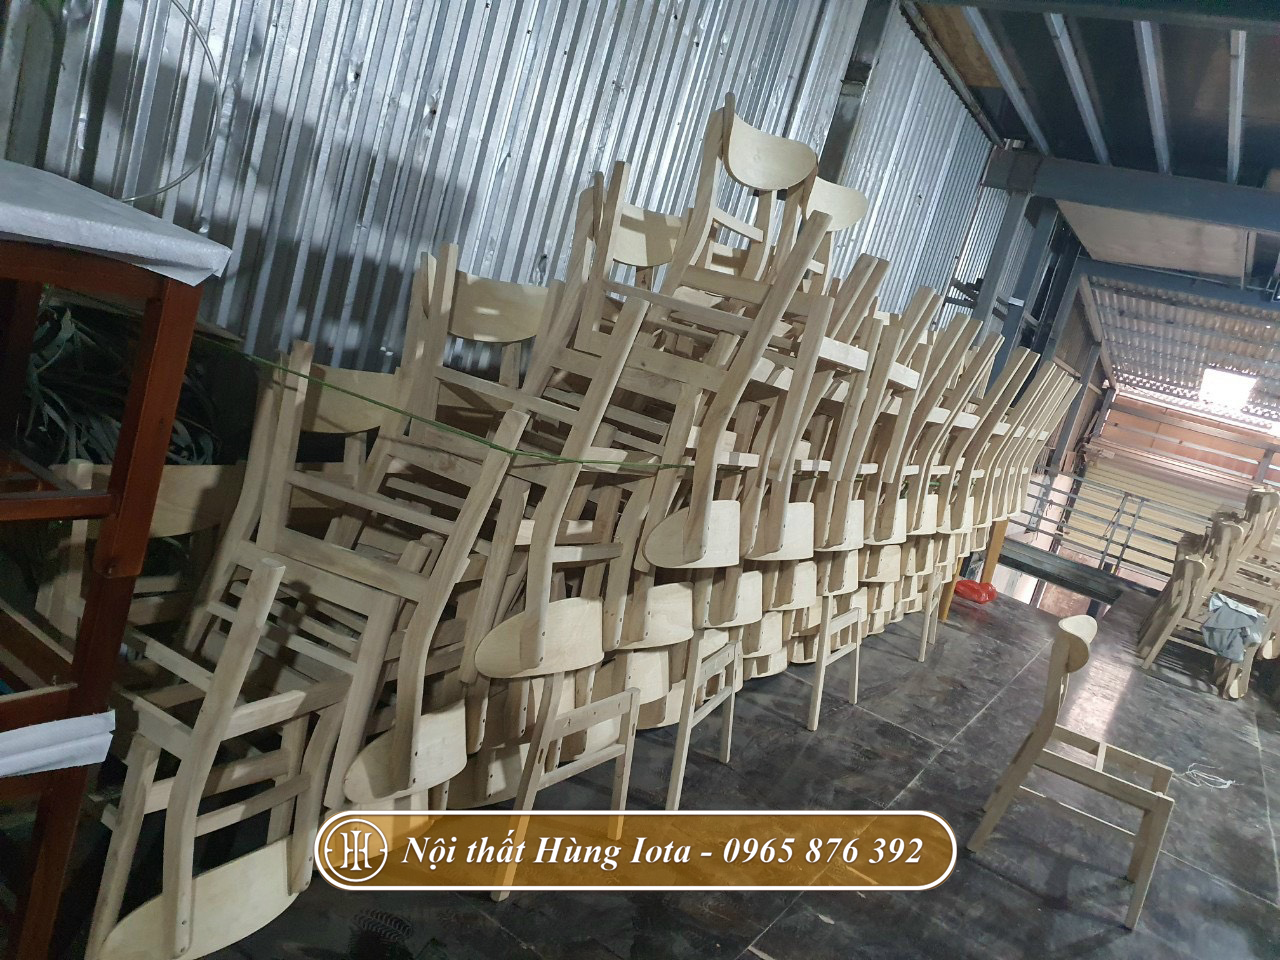 Xưởng sản xuất ghế gỗ Mango uy tín ở Hà Nội